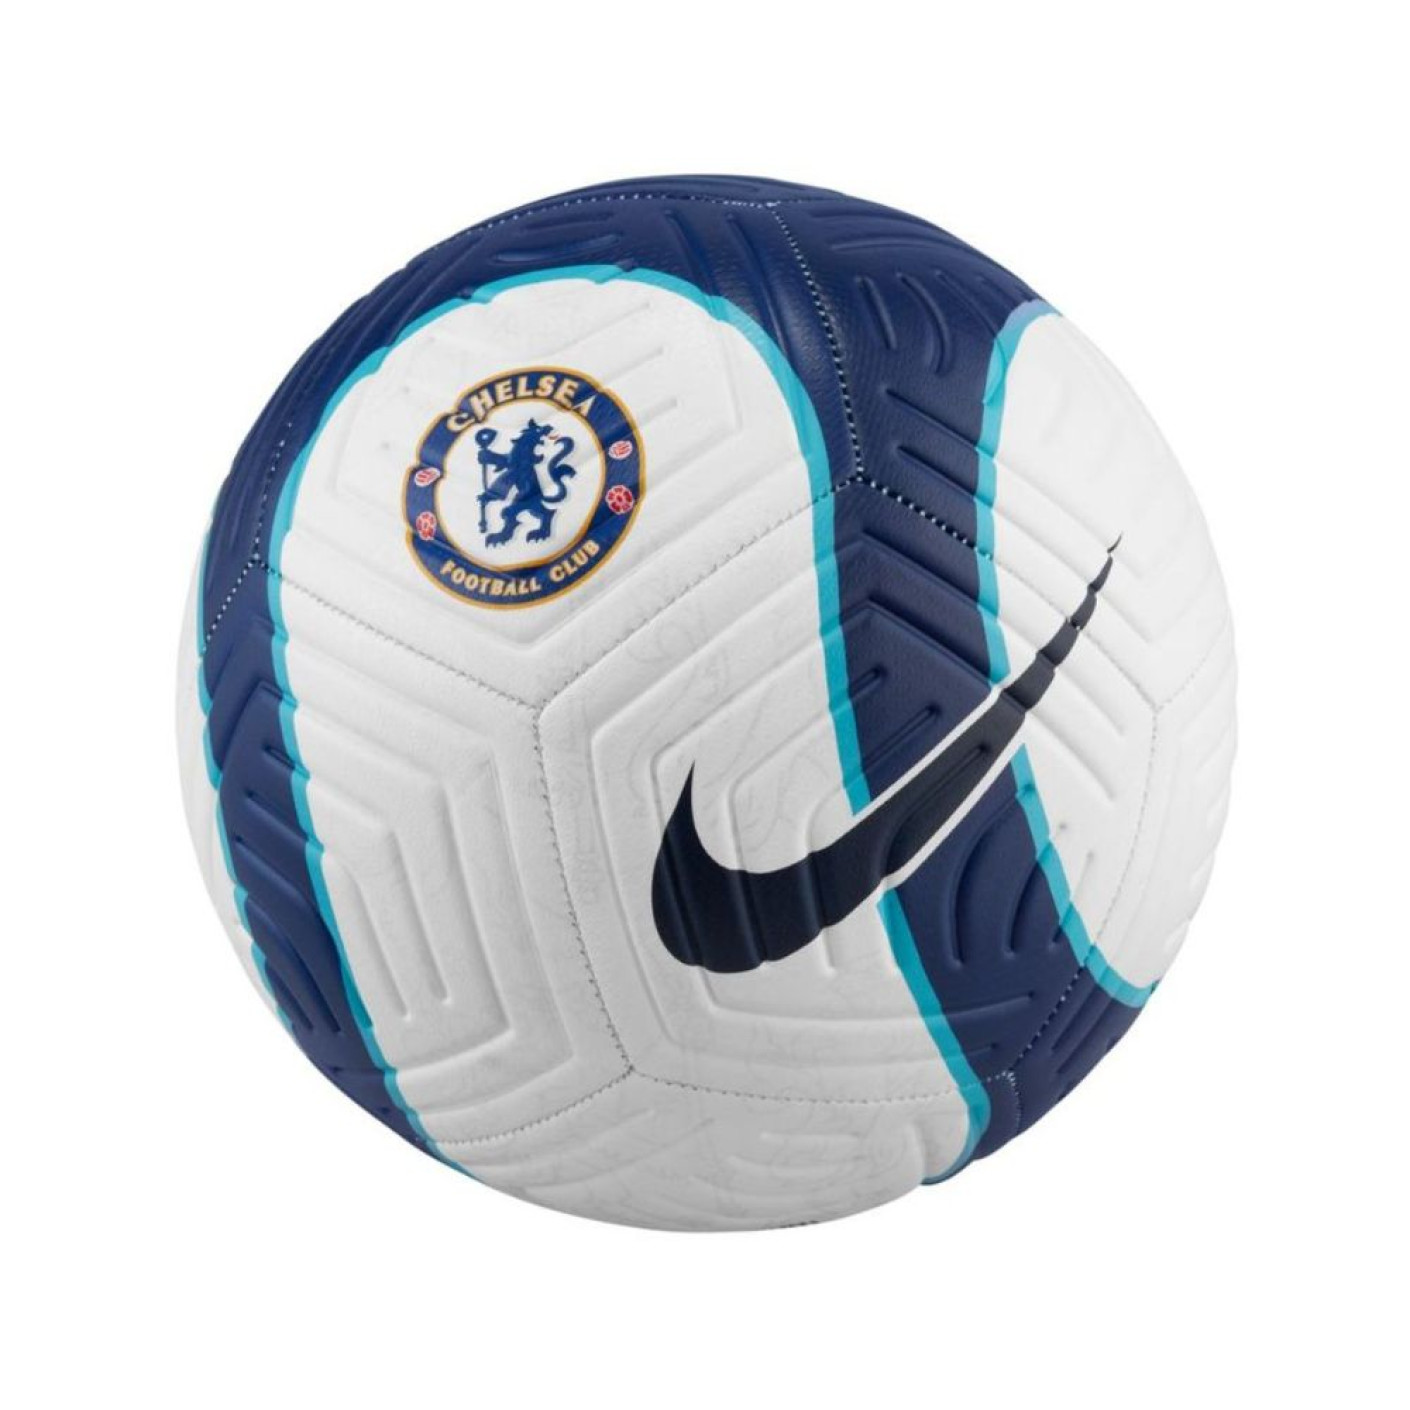 Nike Chelsea Strike Ballon de Foot Blanc Bleu Bleu Foncé